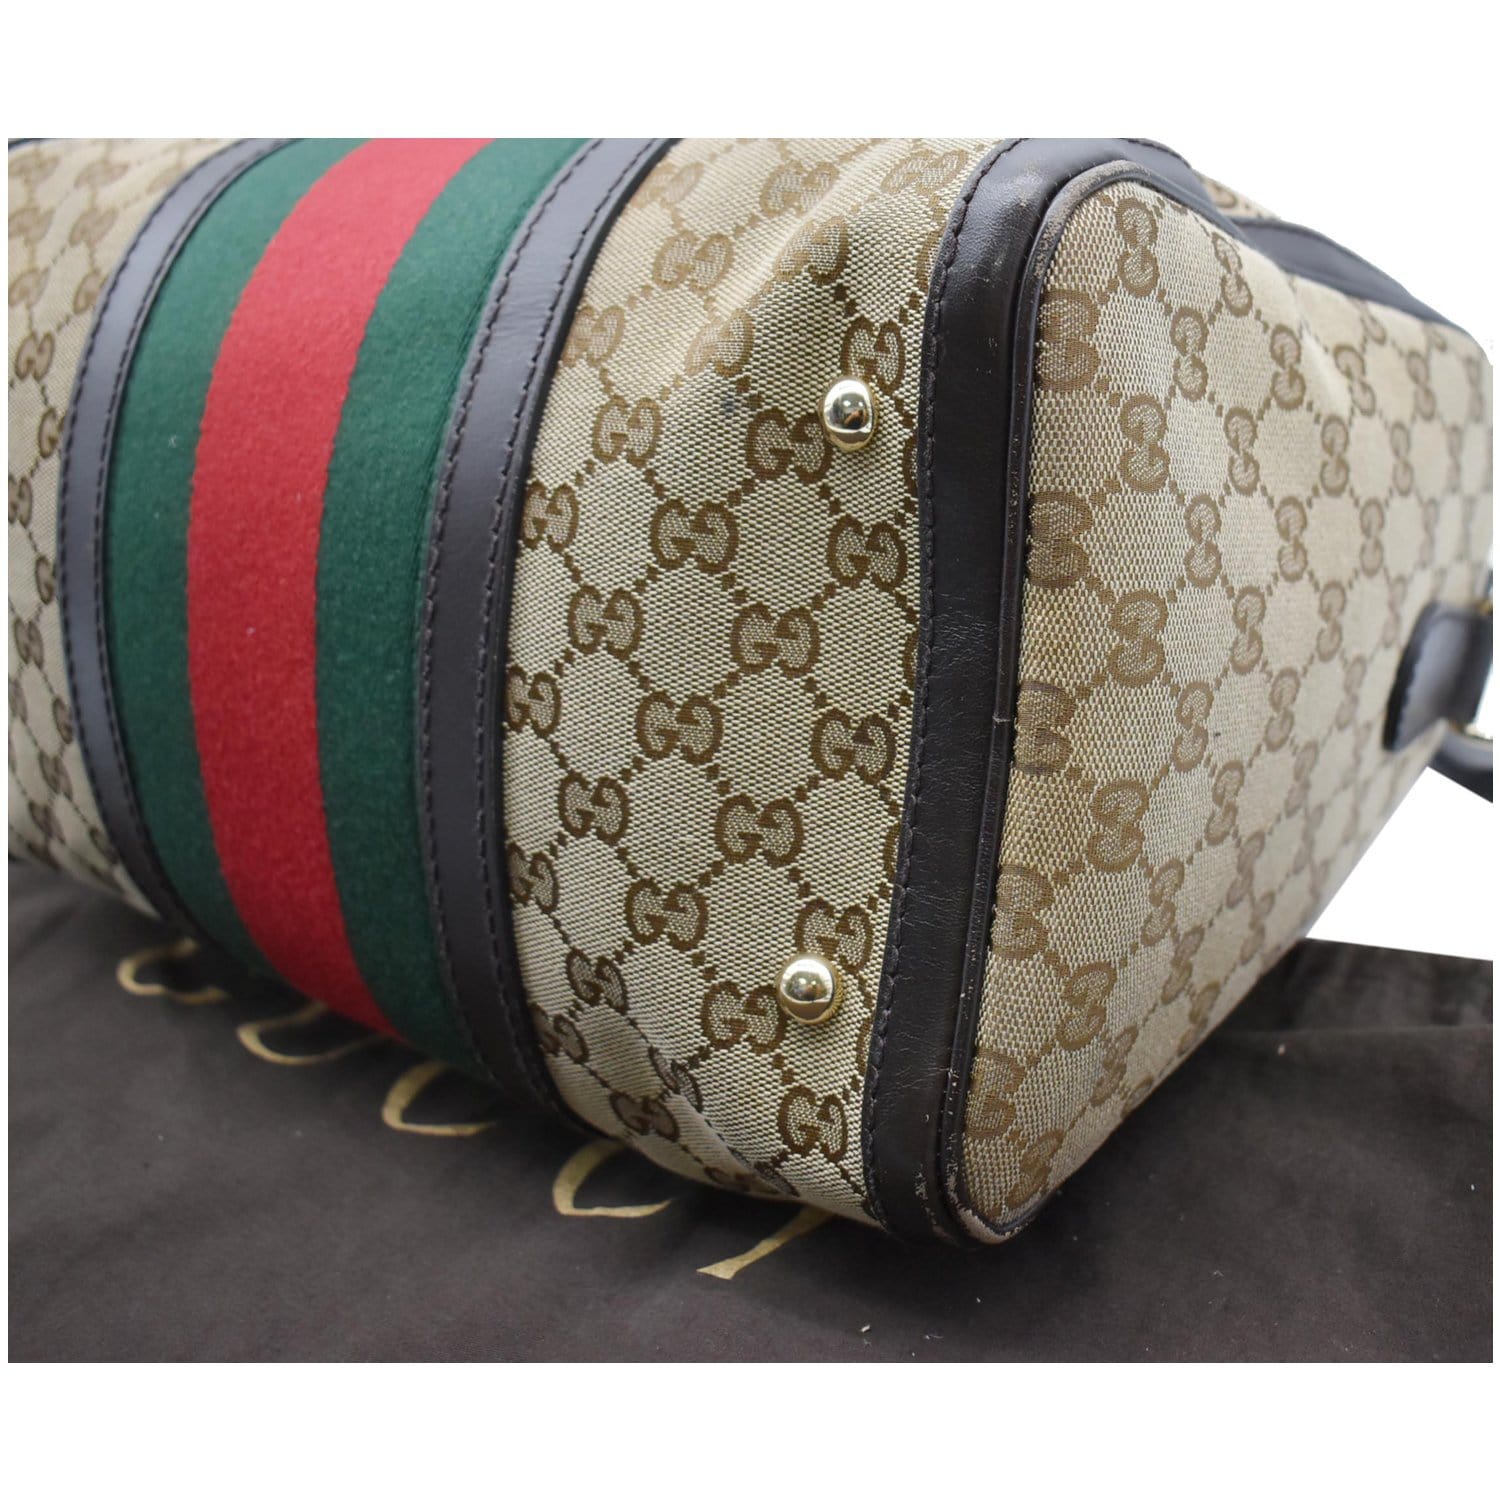 Gucci, Bags, Authentic Gucci Boston Bag